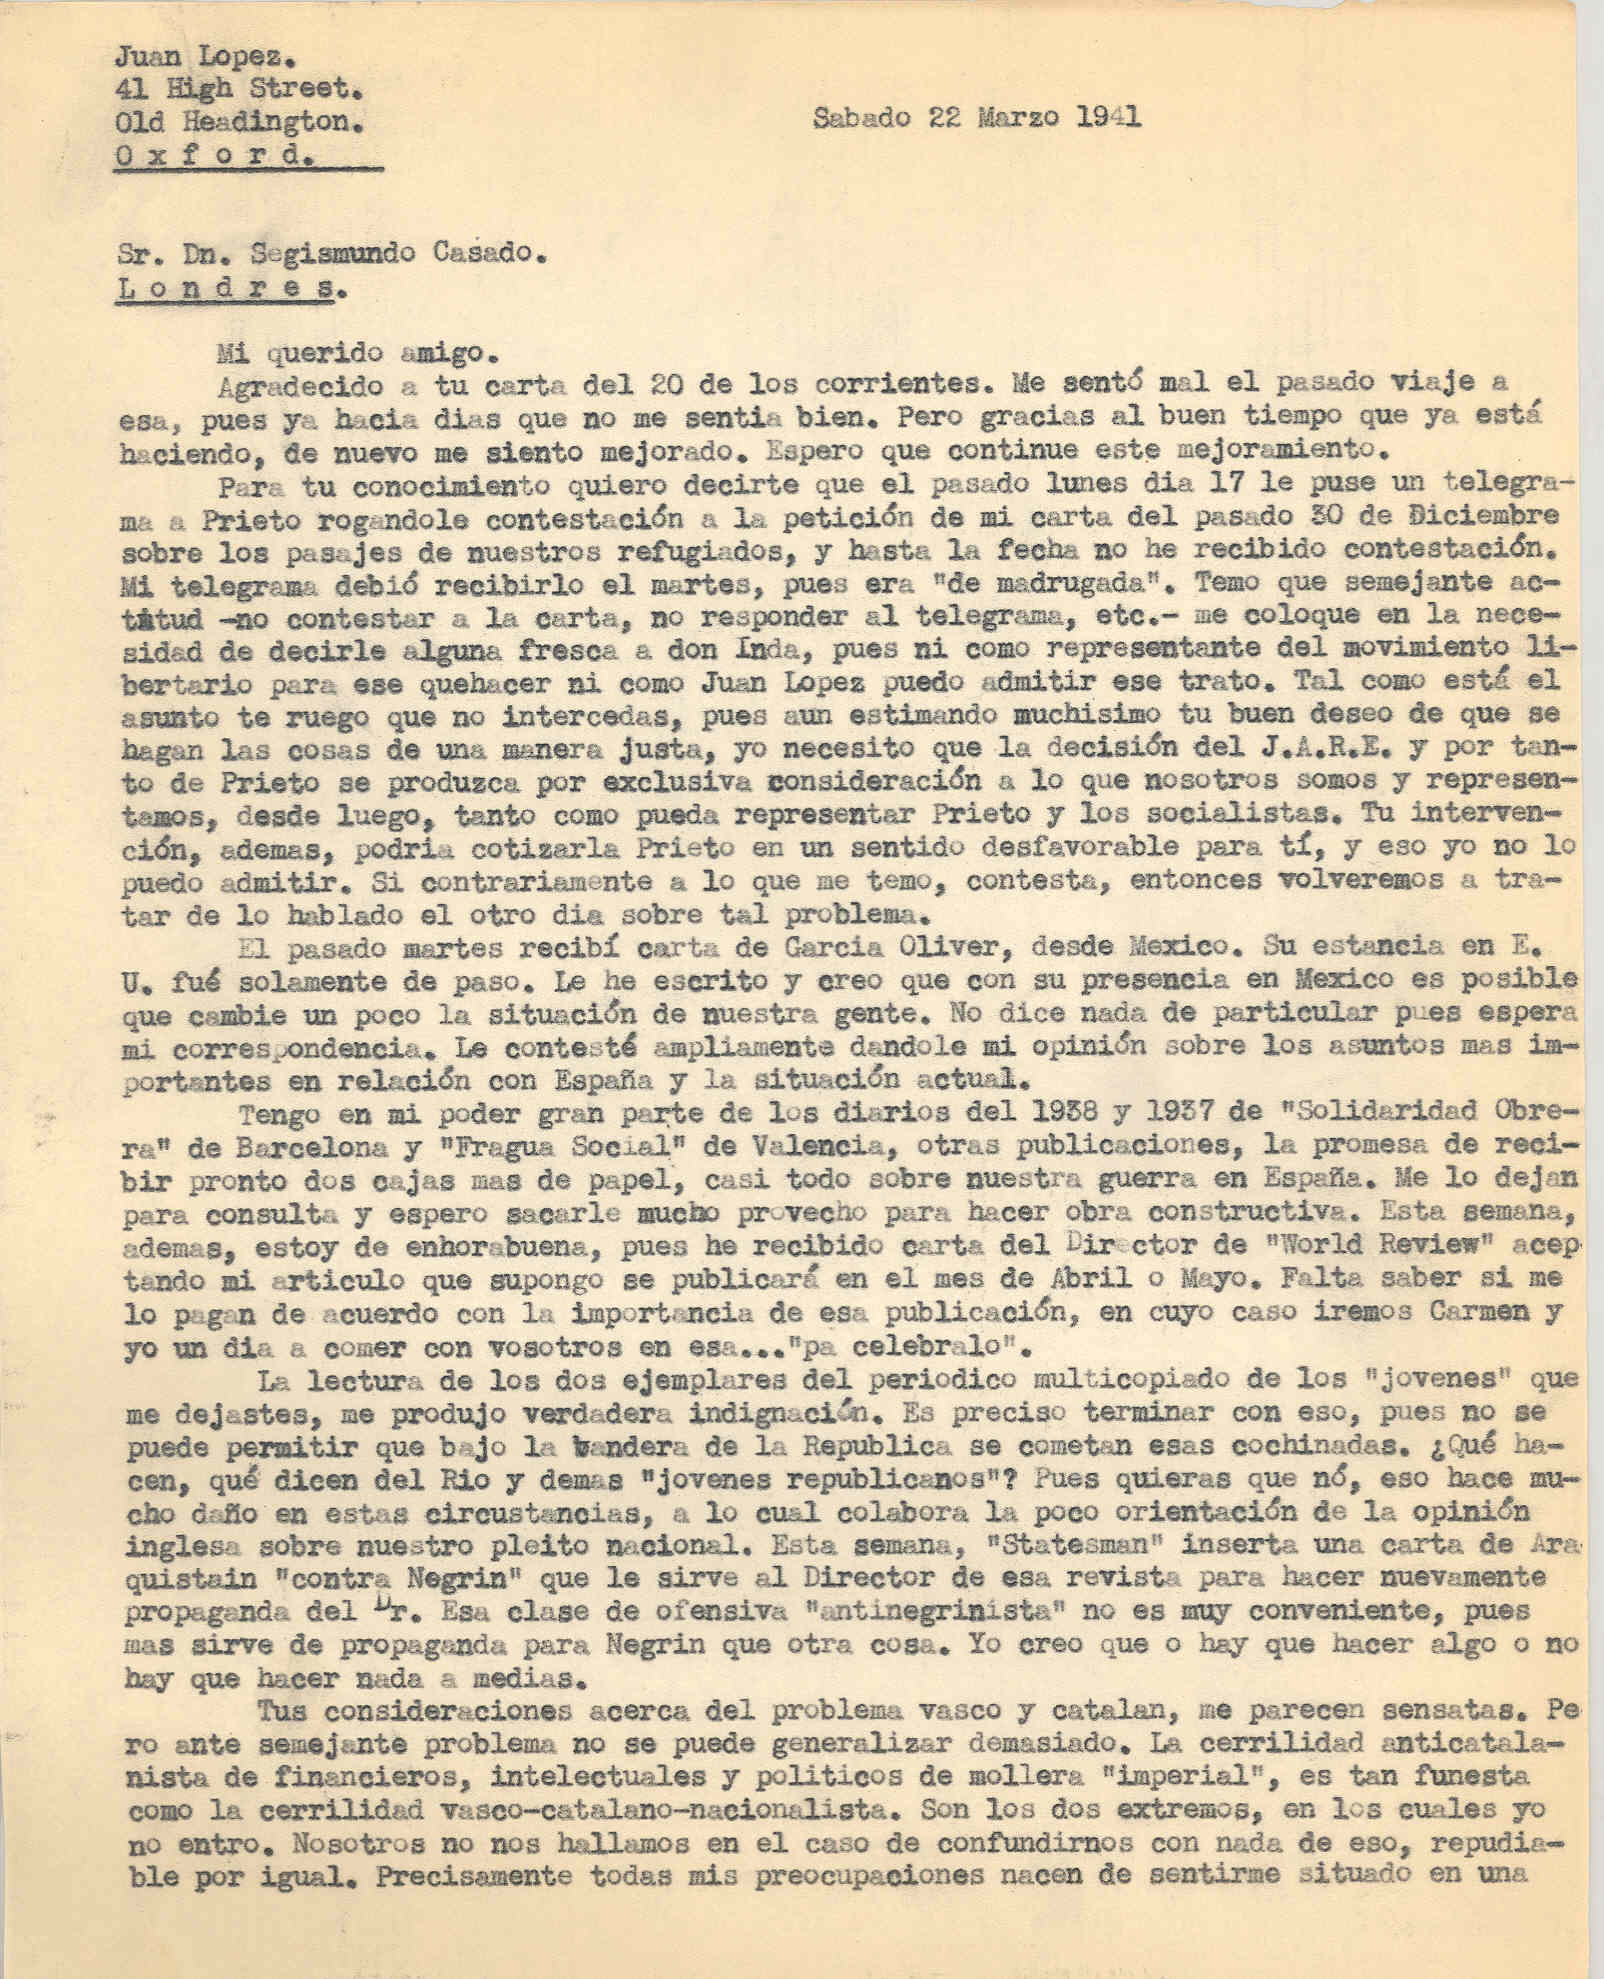 Carta a Segismundo Casado criticando la actitud de José del Río y demás jóvenes republicanos, también opina sobre el problema vasco y catalán.